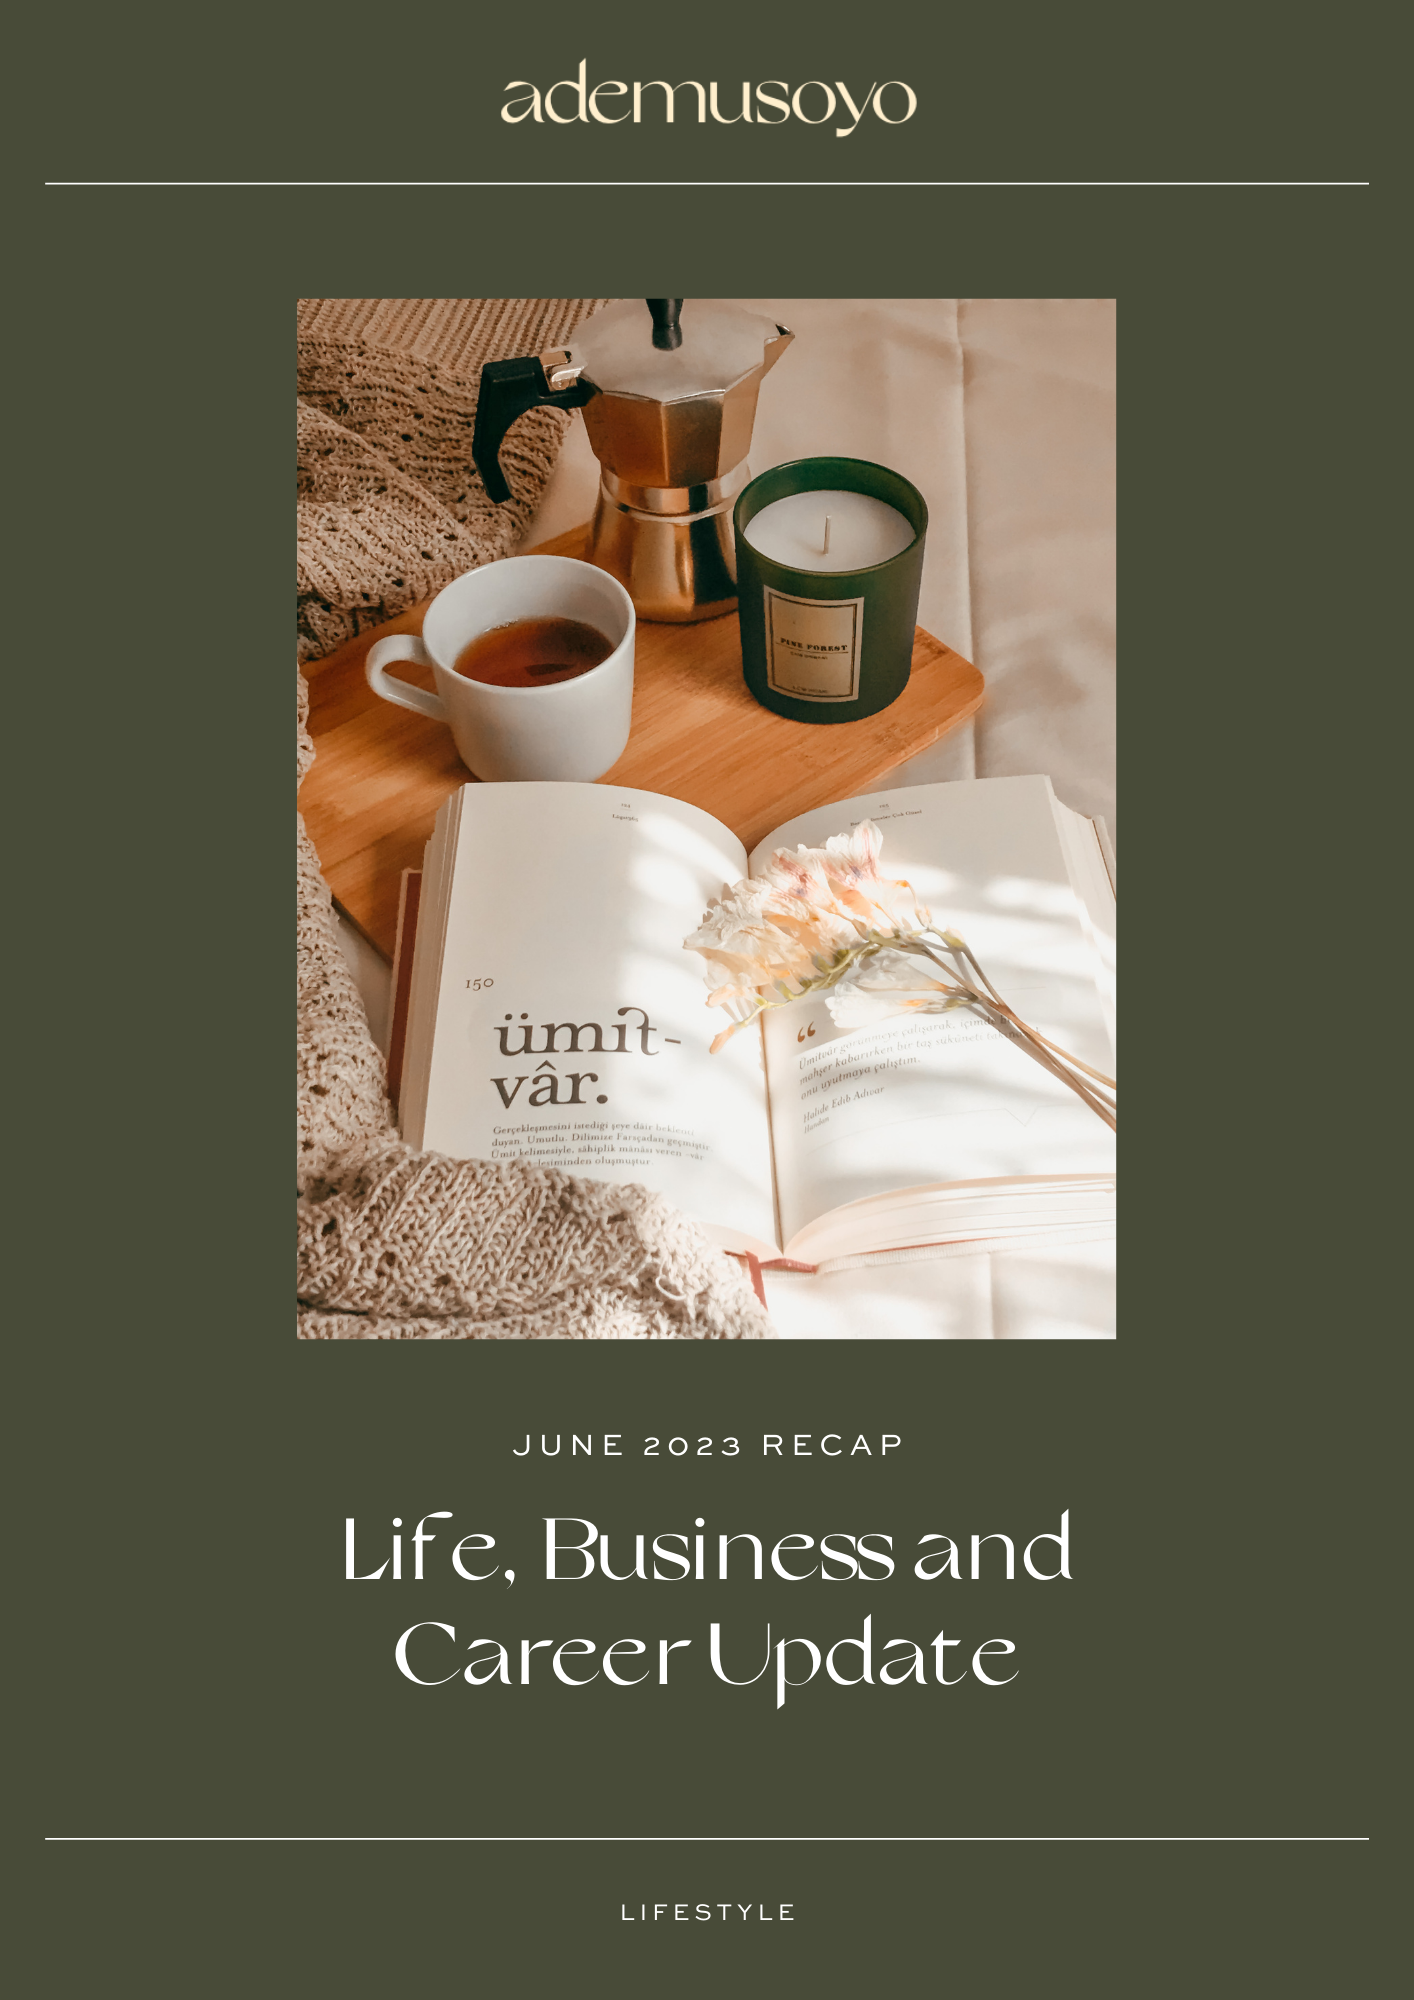 June 2023 Recap: Life, Business and Career Update